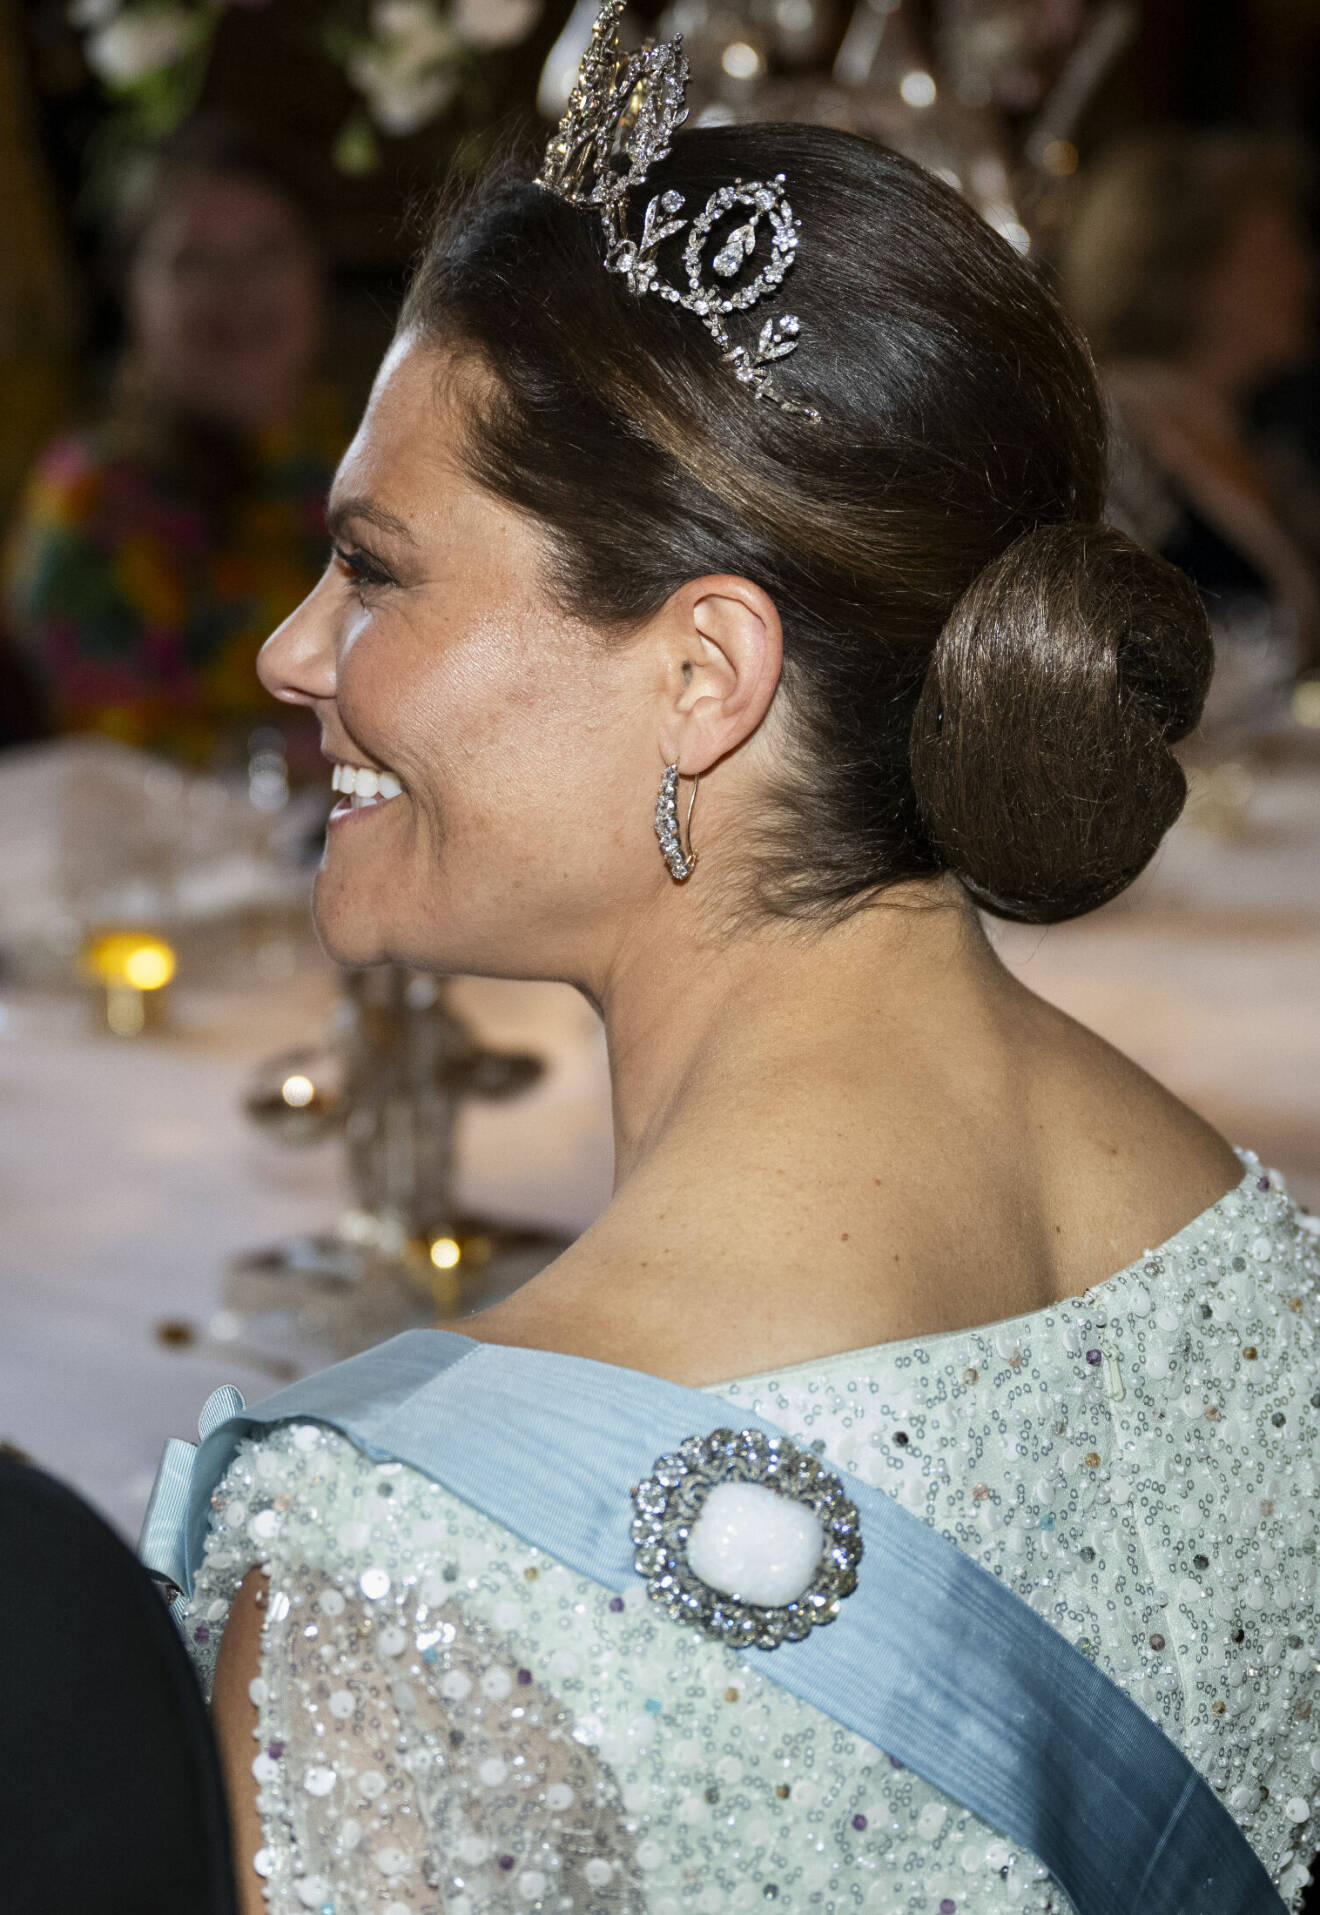 Statsbesök från Danmark – kronprinsessan Victorias tiara och frisyr